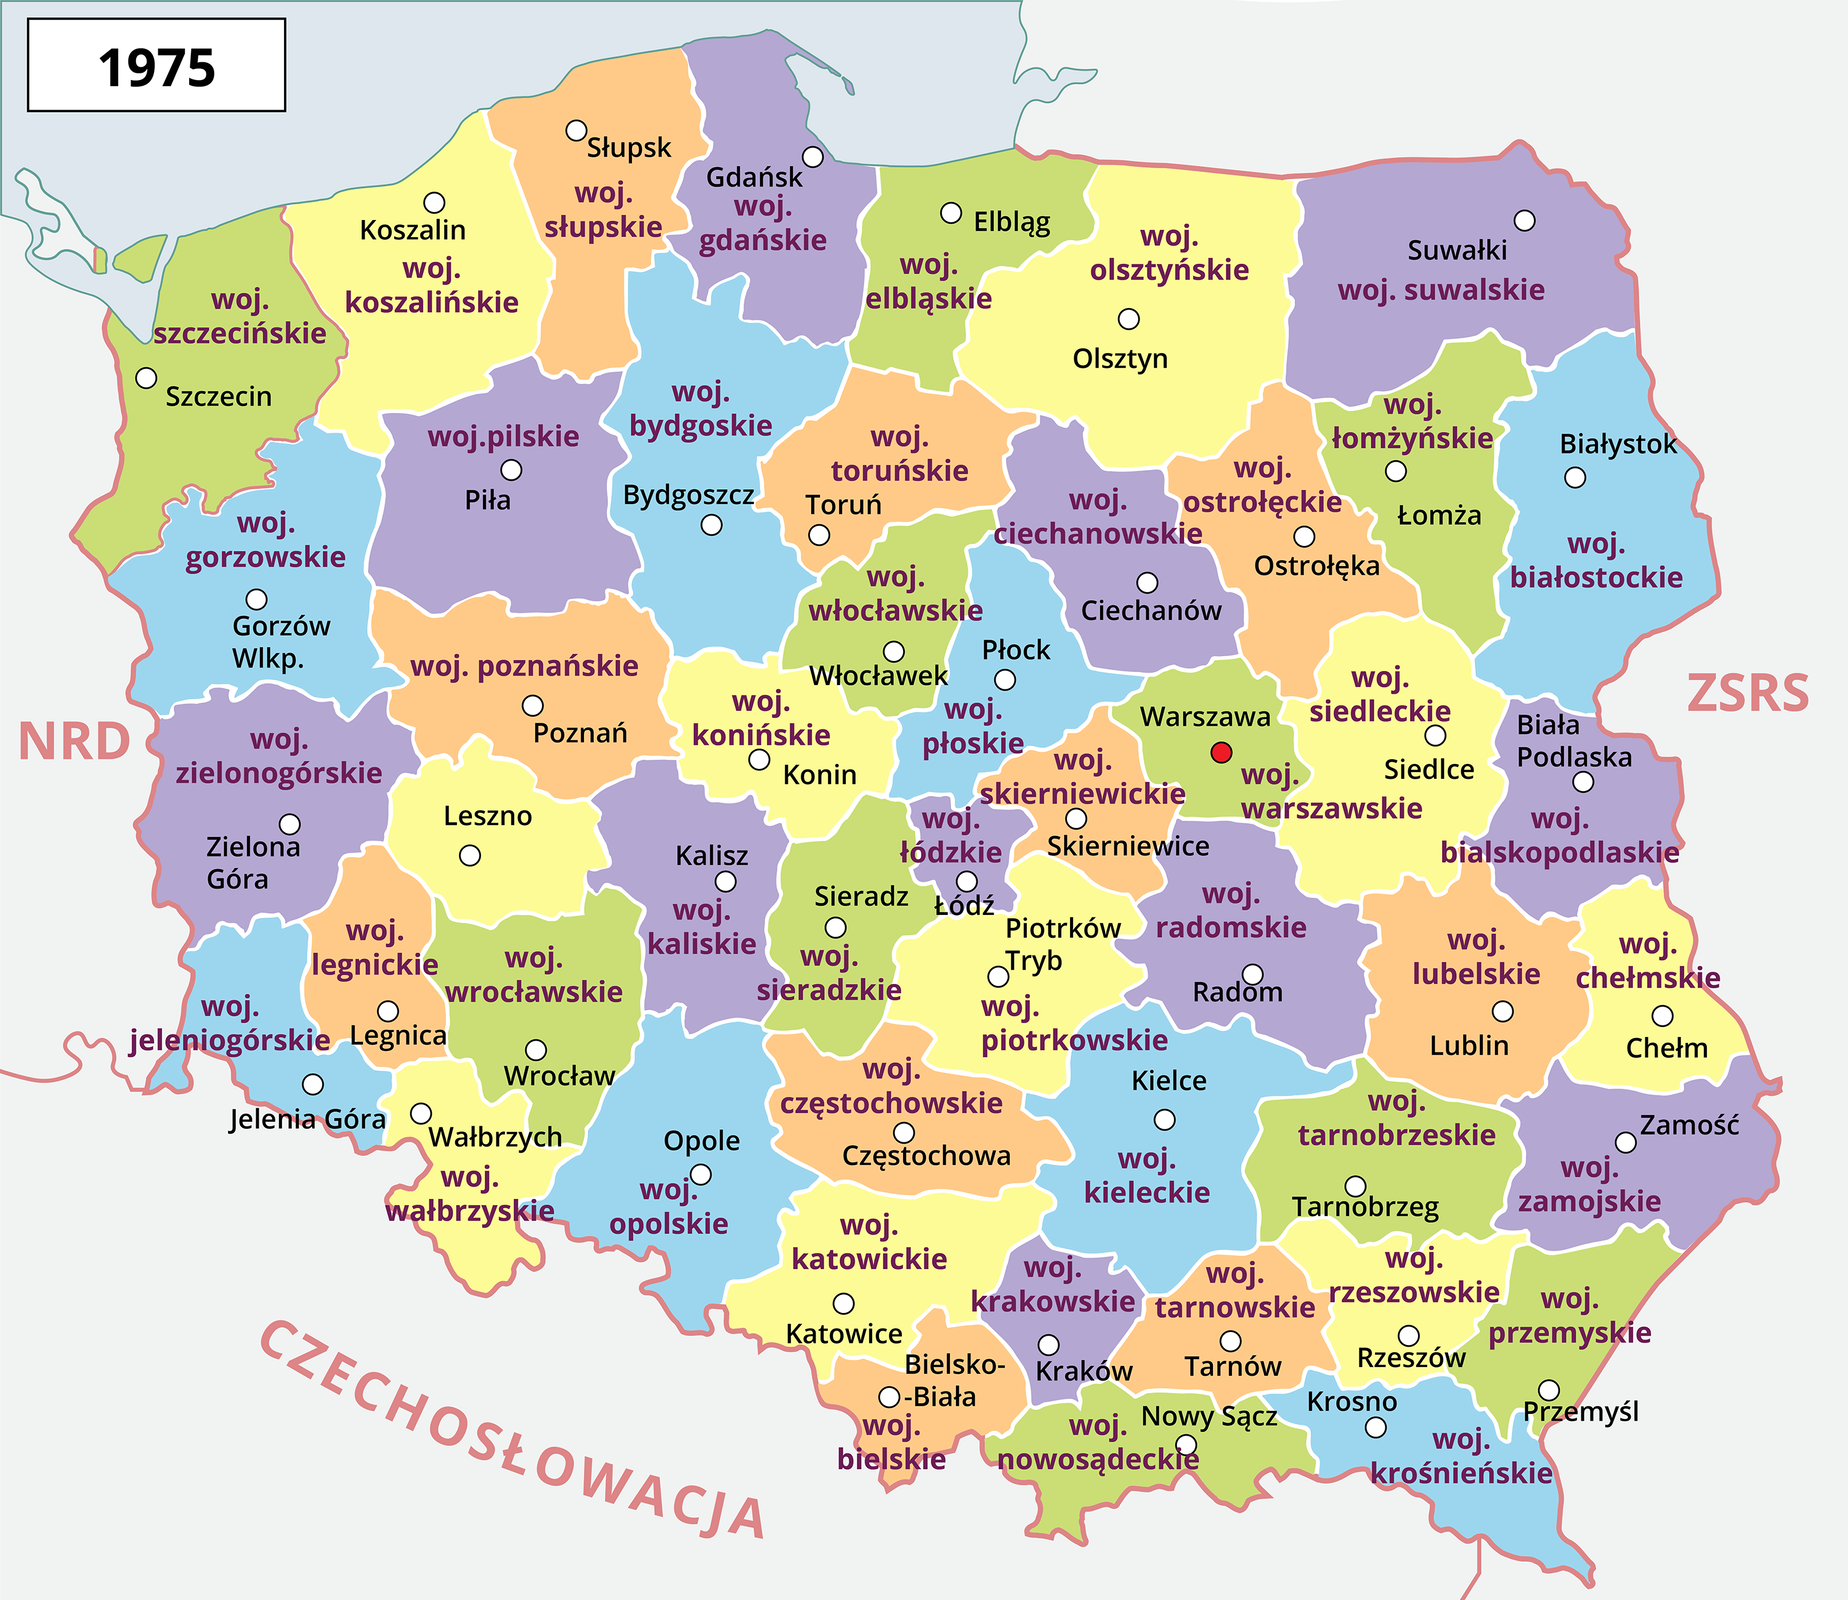 Mapa Polski przedstawiająca podział administracyjny na czterdzieści dziewięć województw w roku 1975. Zaznaczone są następujące województwa: bialskopodlaskie, białostockie, bielskie, bydgoskie, chełmskie; ciechanowskie; częstochowskie, elbląskie, gdańskie, gorzowskie, jeleniogórskie, kaliskie, katowickie, kieleckie, konińskie, koszalińskie, miejskie krakowskie, krośnieńskie, legnickie, leszczyńskie, lubelskie, łomżyńskie, miejskie łódzkie, nowosądeckie, olsztyńskie, opolskie, ostrołęckie, pilskie, piotrkowskie, płockie, poznańskie, przemyskie, radomskie, rzeszowskie, siedleckie, sieradzkie, skierniewickie, słupskie, suwalskie, szczecińskie, tarnobrzeskie, tarnowskie, toruńskie, wałbrzyskie, stołeczne warszawskie, włocławskie, wrocławskie, zamojskie, zielonogórskie.